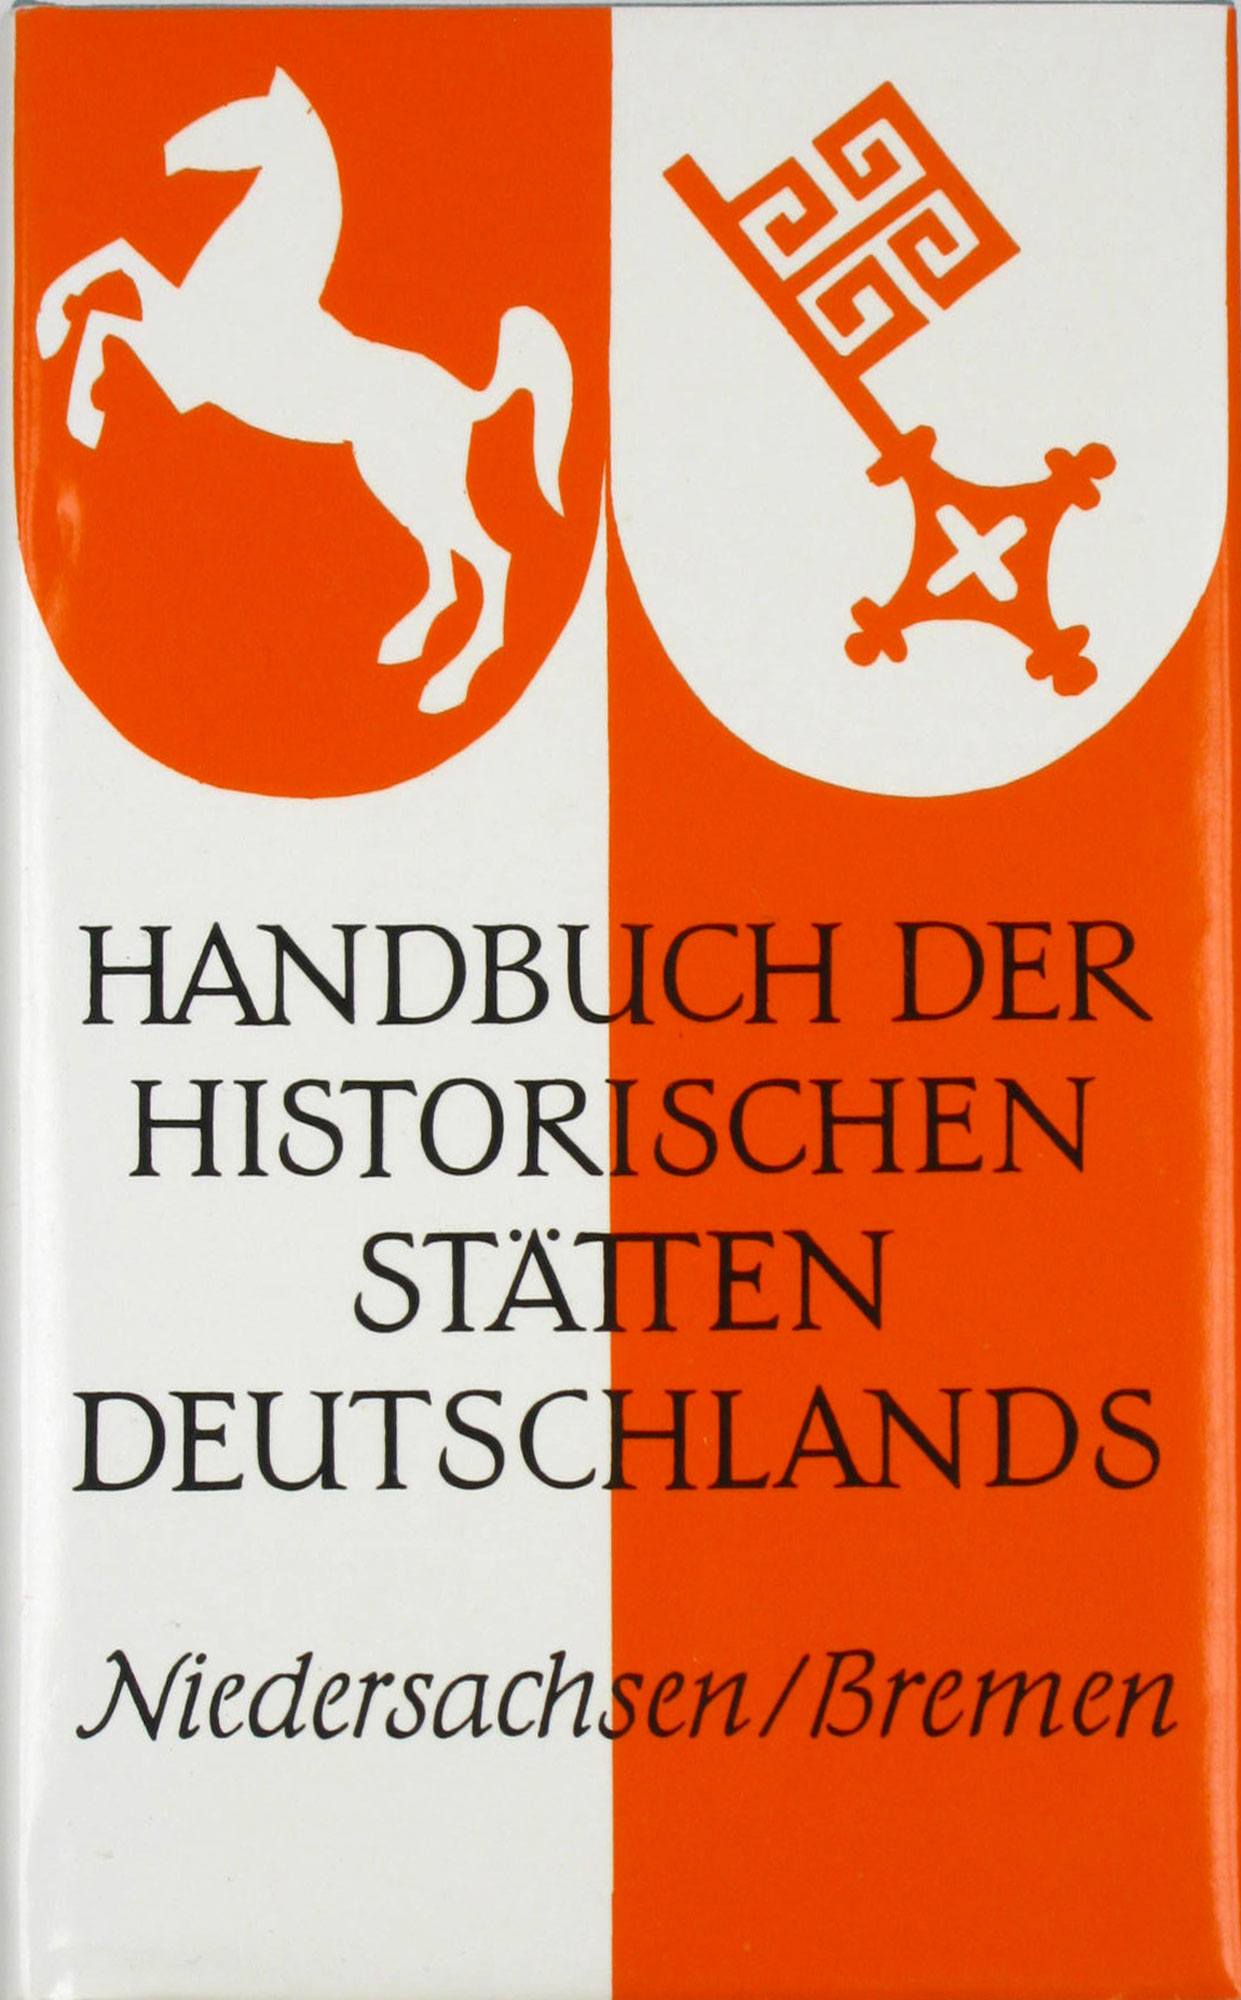 Brüning, Kurt (Hrsg.) und Heinrich Schmidt (Hrsg.):  Handbuch der historischen Stätten Deutschlands. Niedersachsen und Bremen. Band 2. 